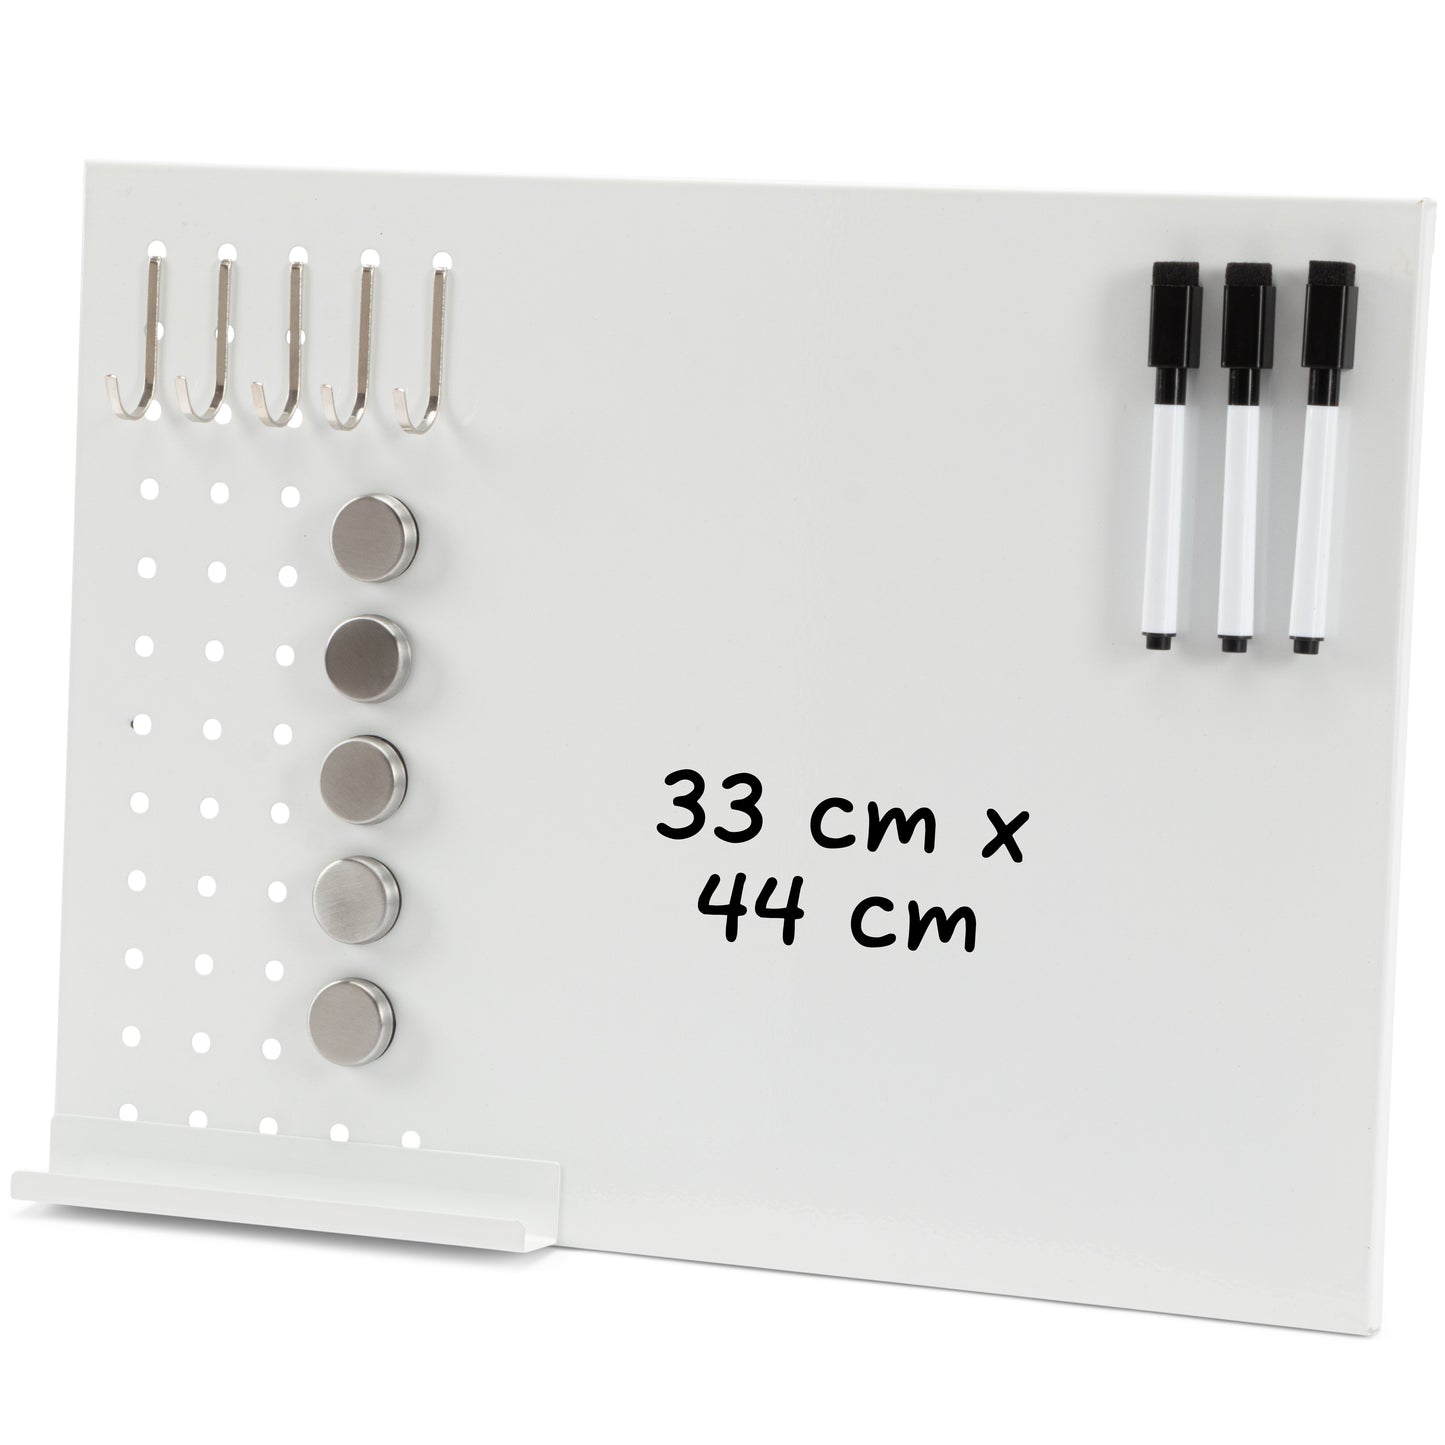 All-in-One Magnettafel - Kombiniert Whiteboard, Memoboard und Magnettafel